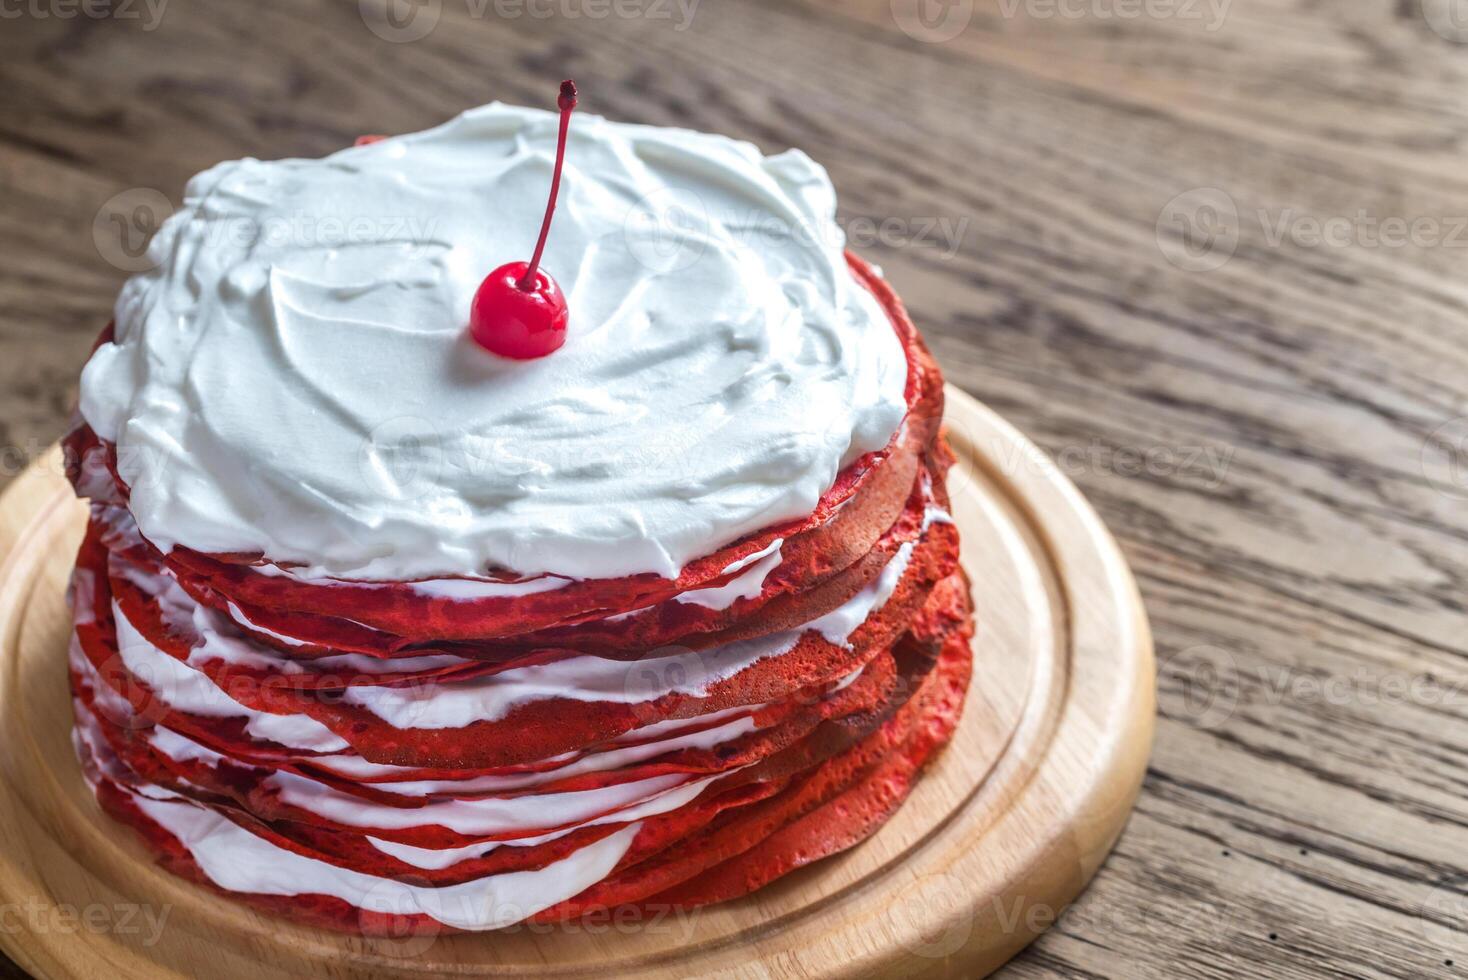 vermelho veludo Tapioca bolo em a de madeira borda foto